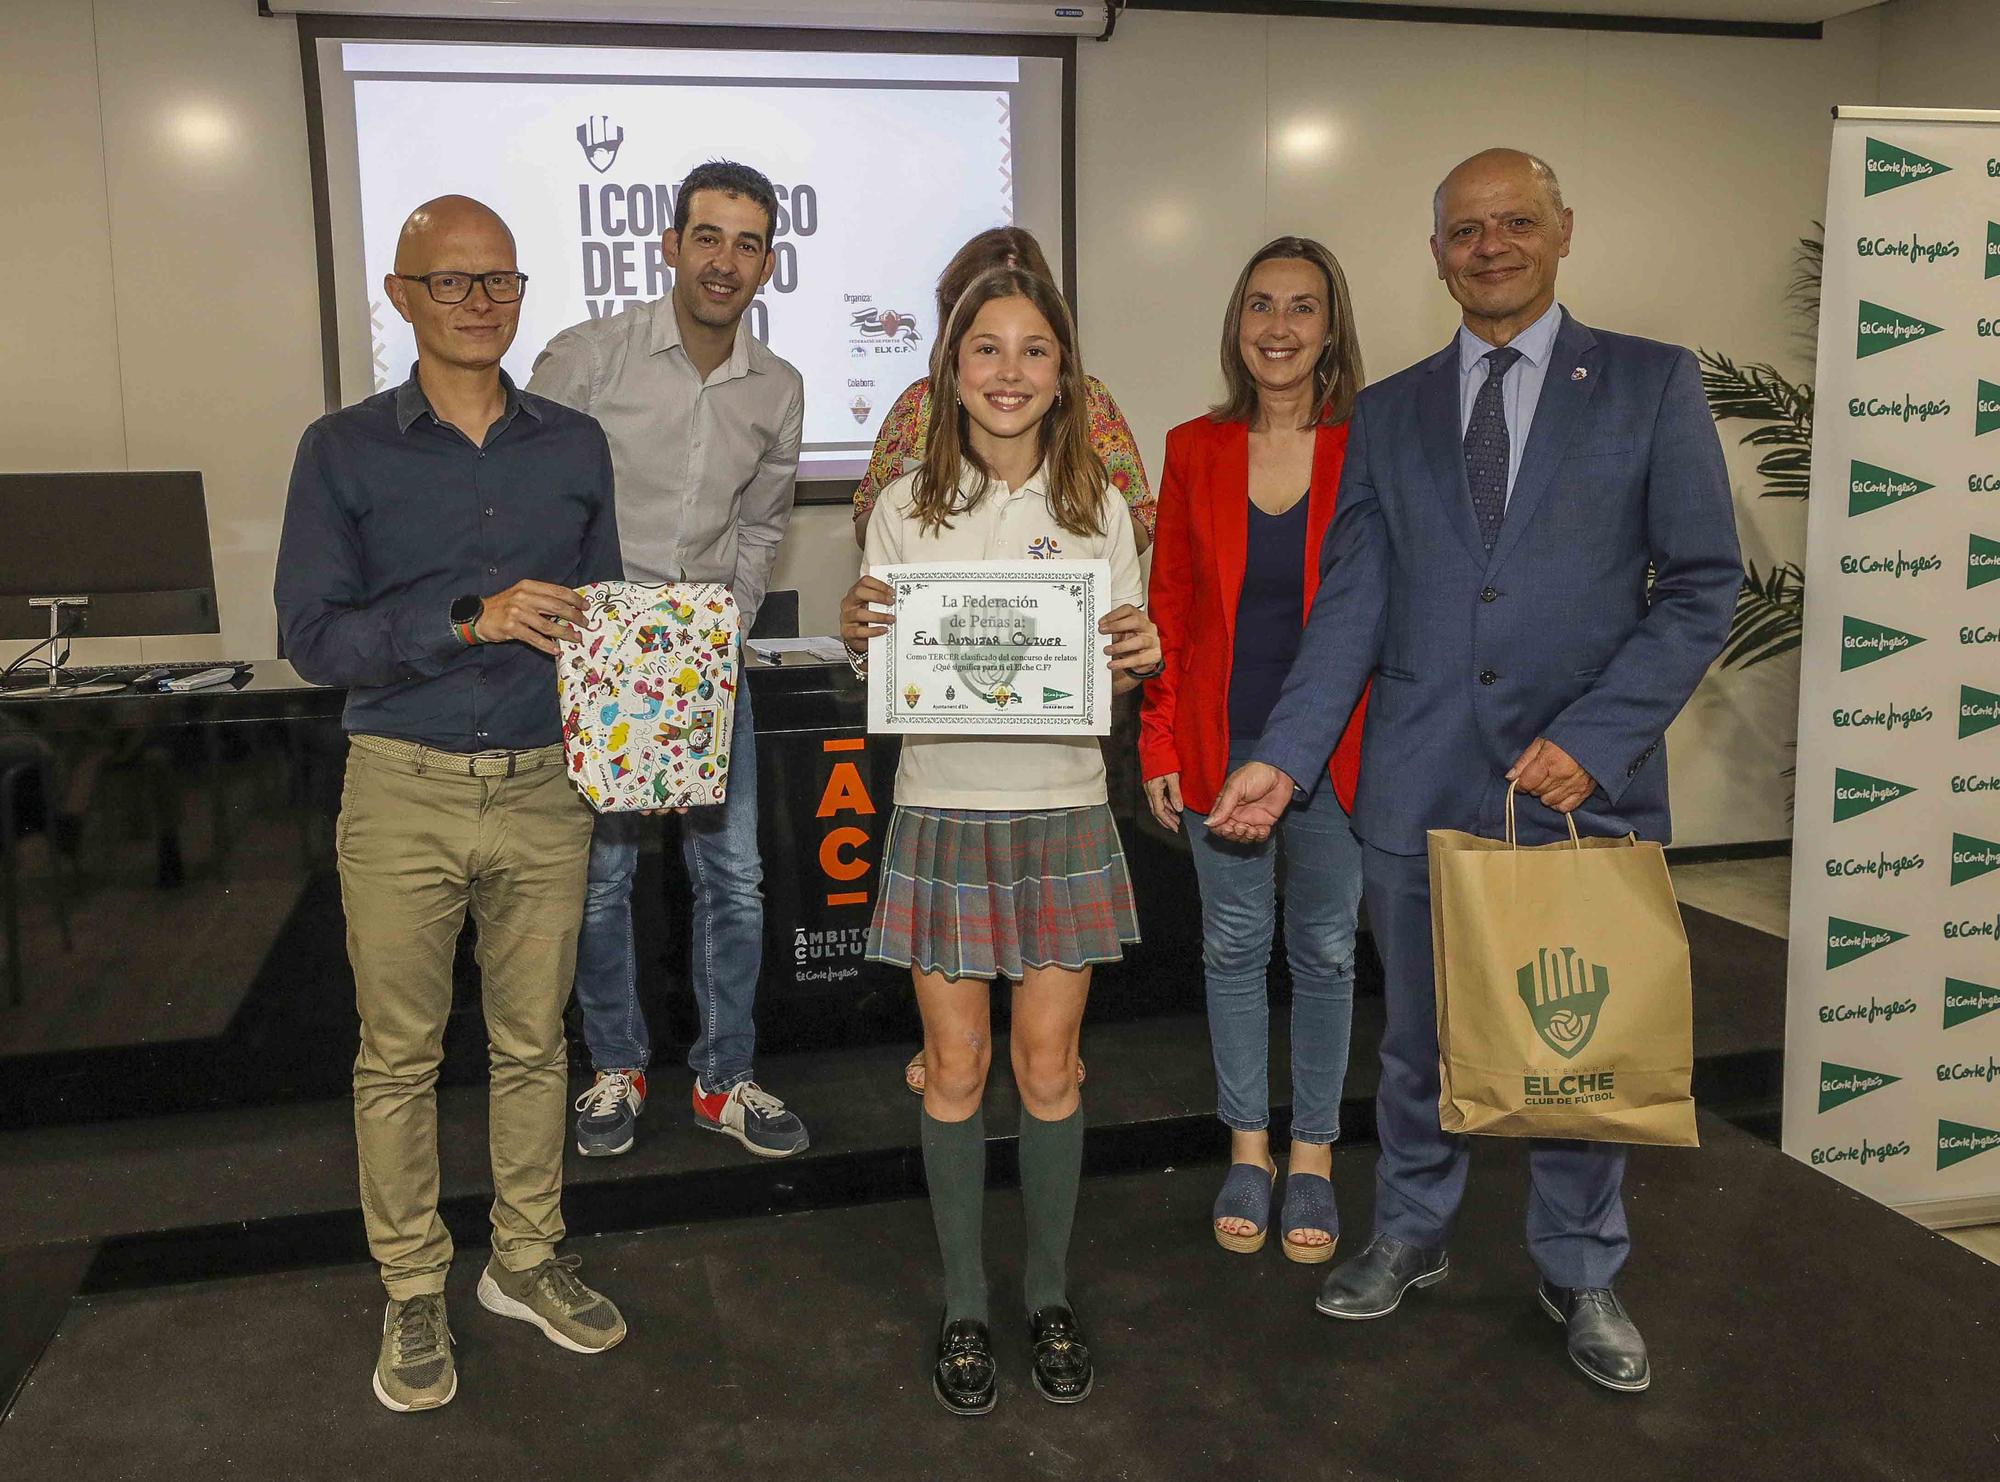 Éxito de participación en el concurso escolar de la Federación de Peñas del Elche